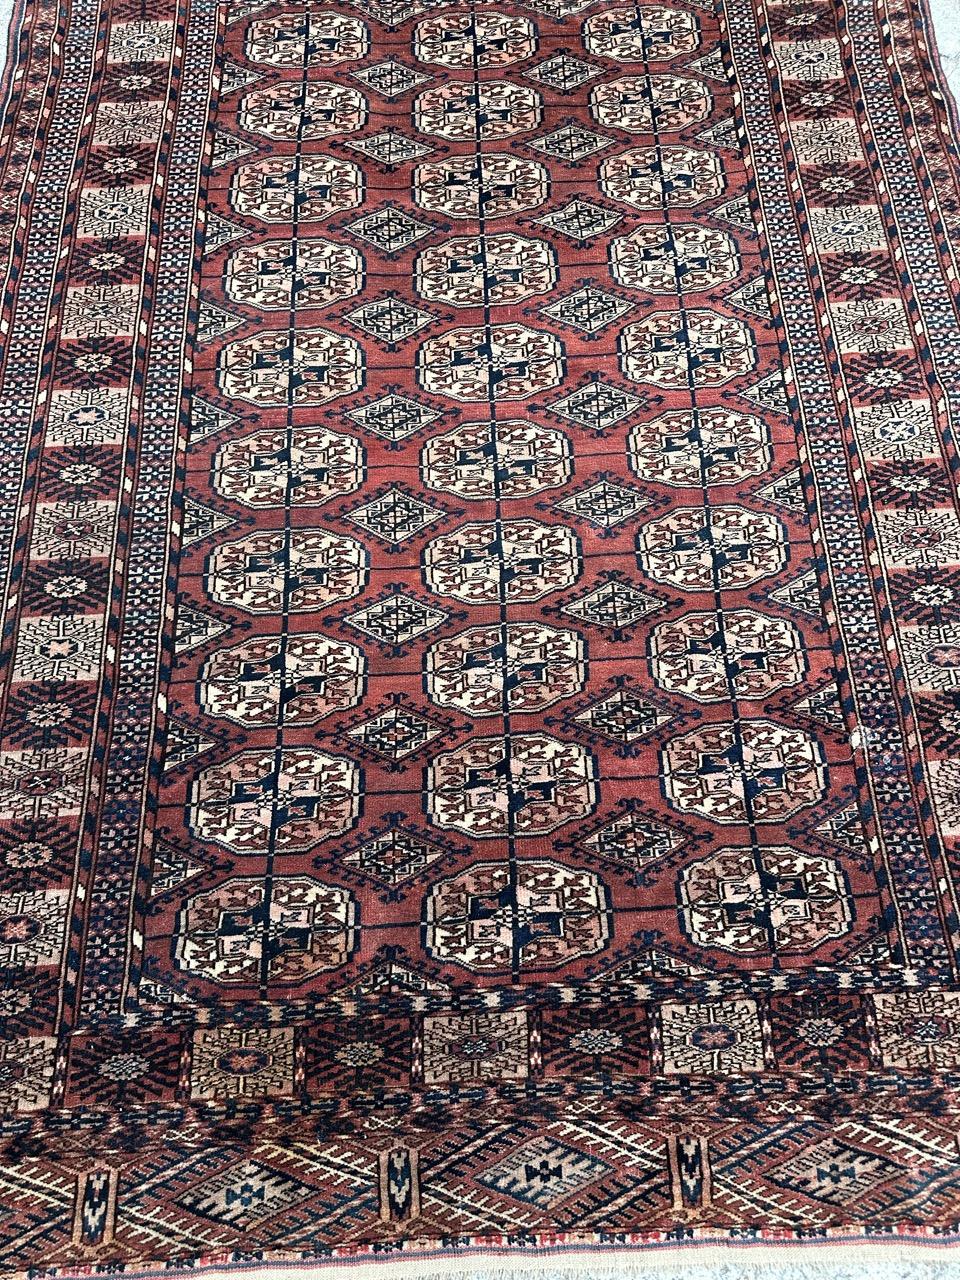 Découvrez un exquis tapis turkmène Bokhara de la fin du 19e siècle, doté d'un motif géométrique captivant et de teintes naturelles étonnantes. Méticuleusement confectionné grâce à un processus de nouage à la main, ce tapis met en valeur l'art